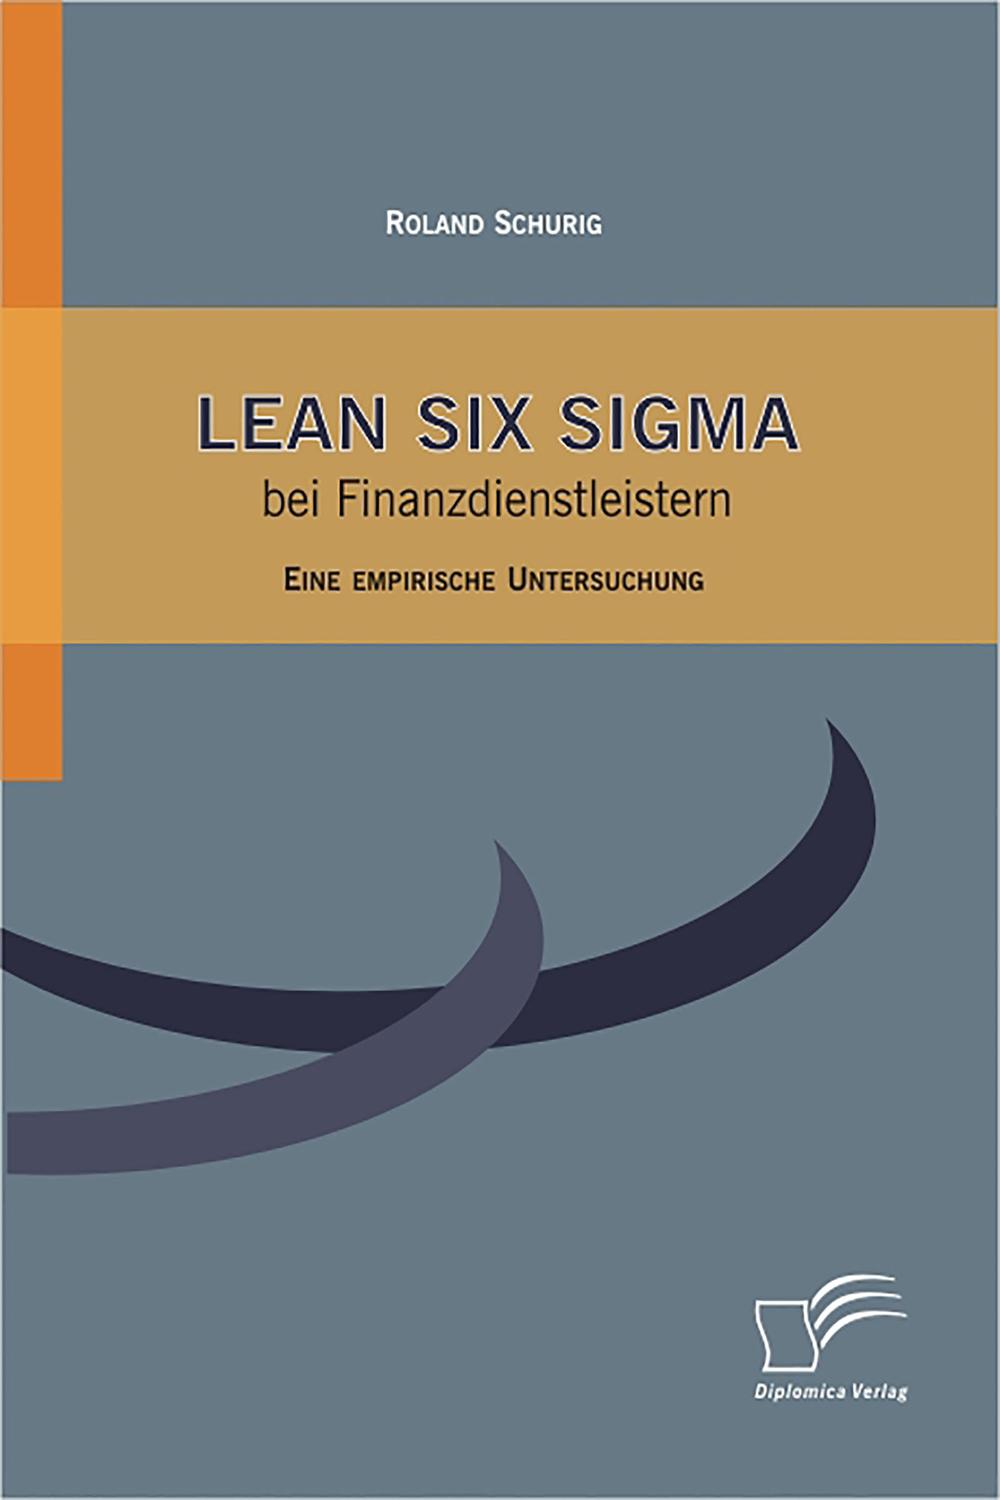 Lean Six Sigma bei Finanzdienstleistern - Roland Schurig